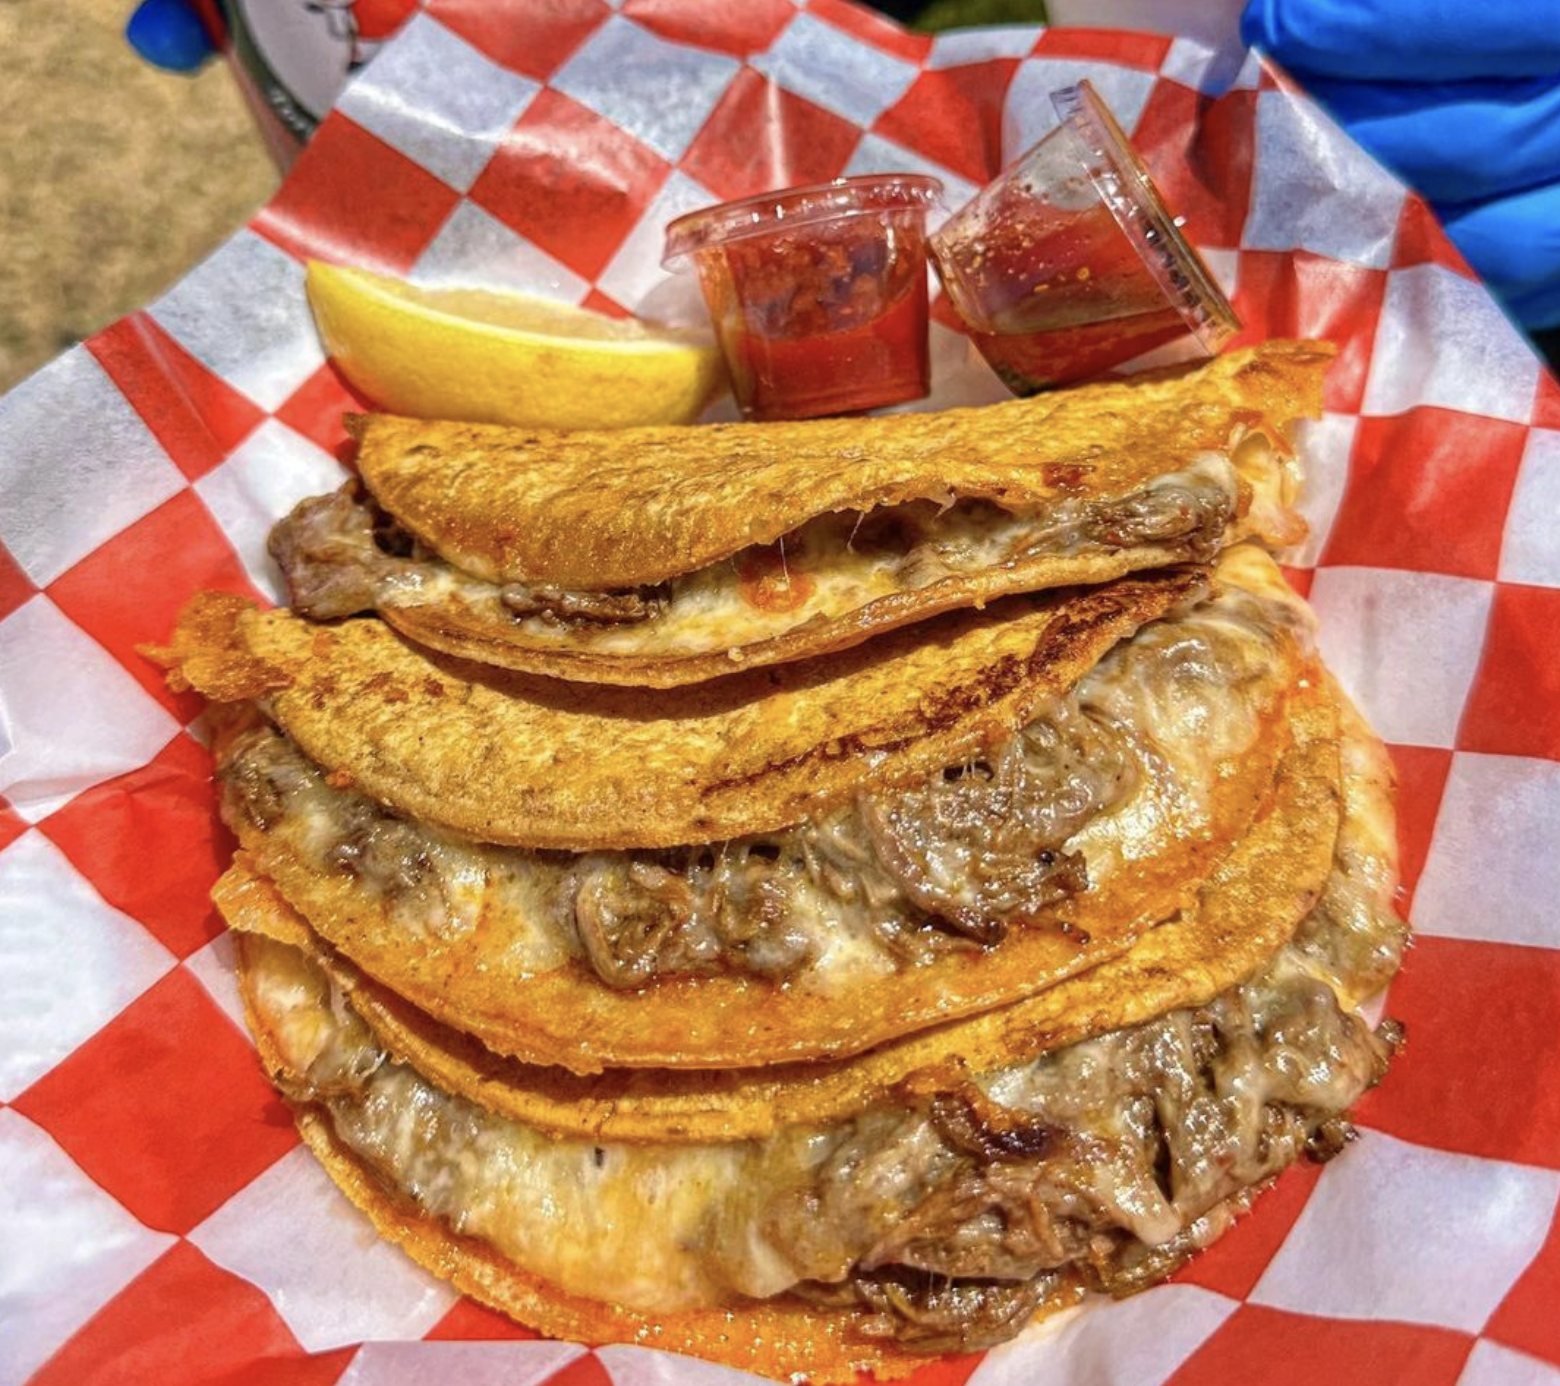 Tacos dorados de birria at Birria Superior. Photo via @BirriaSuperior/IG.